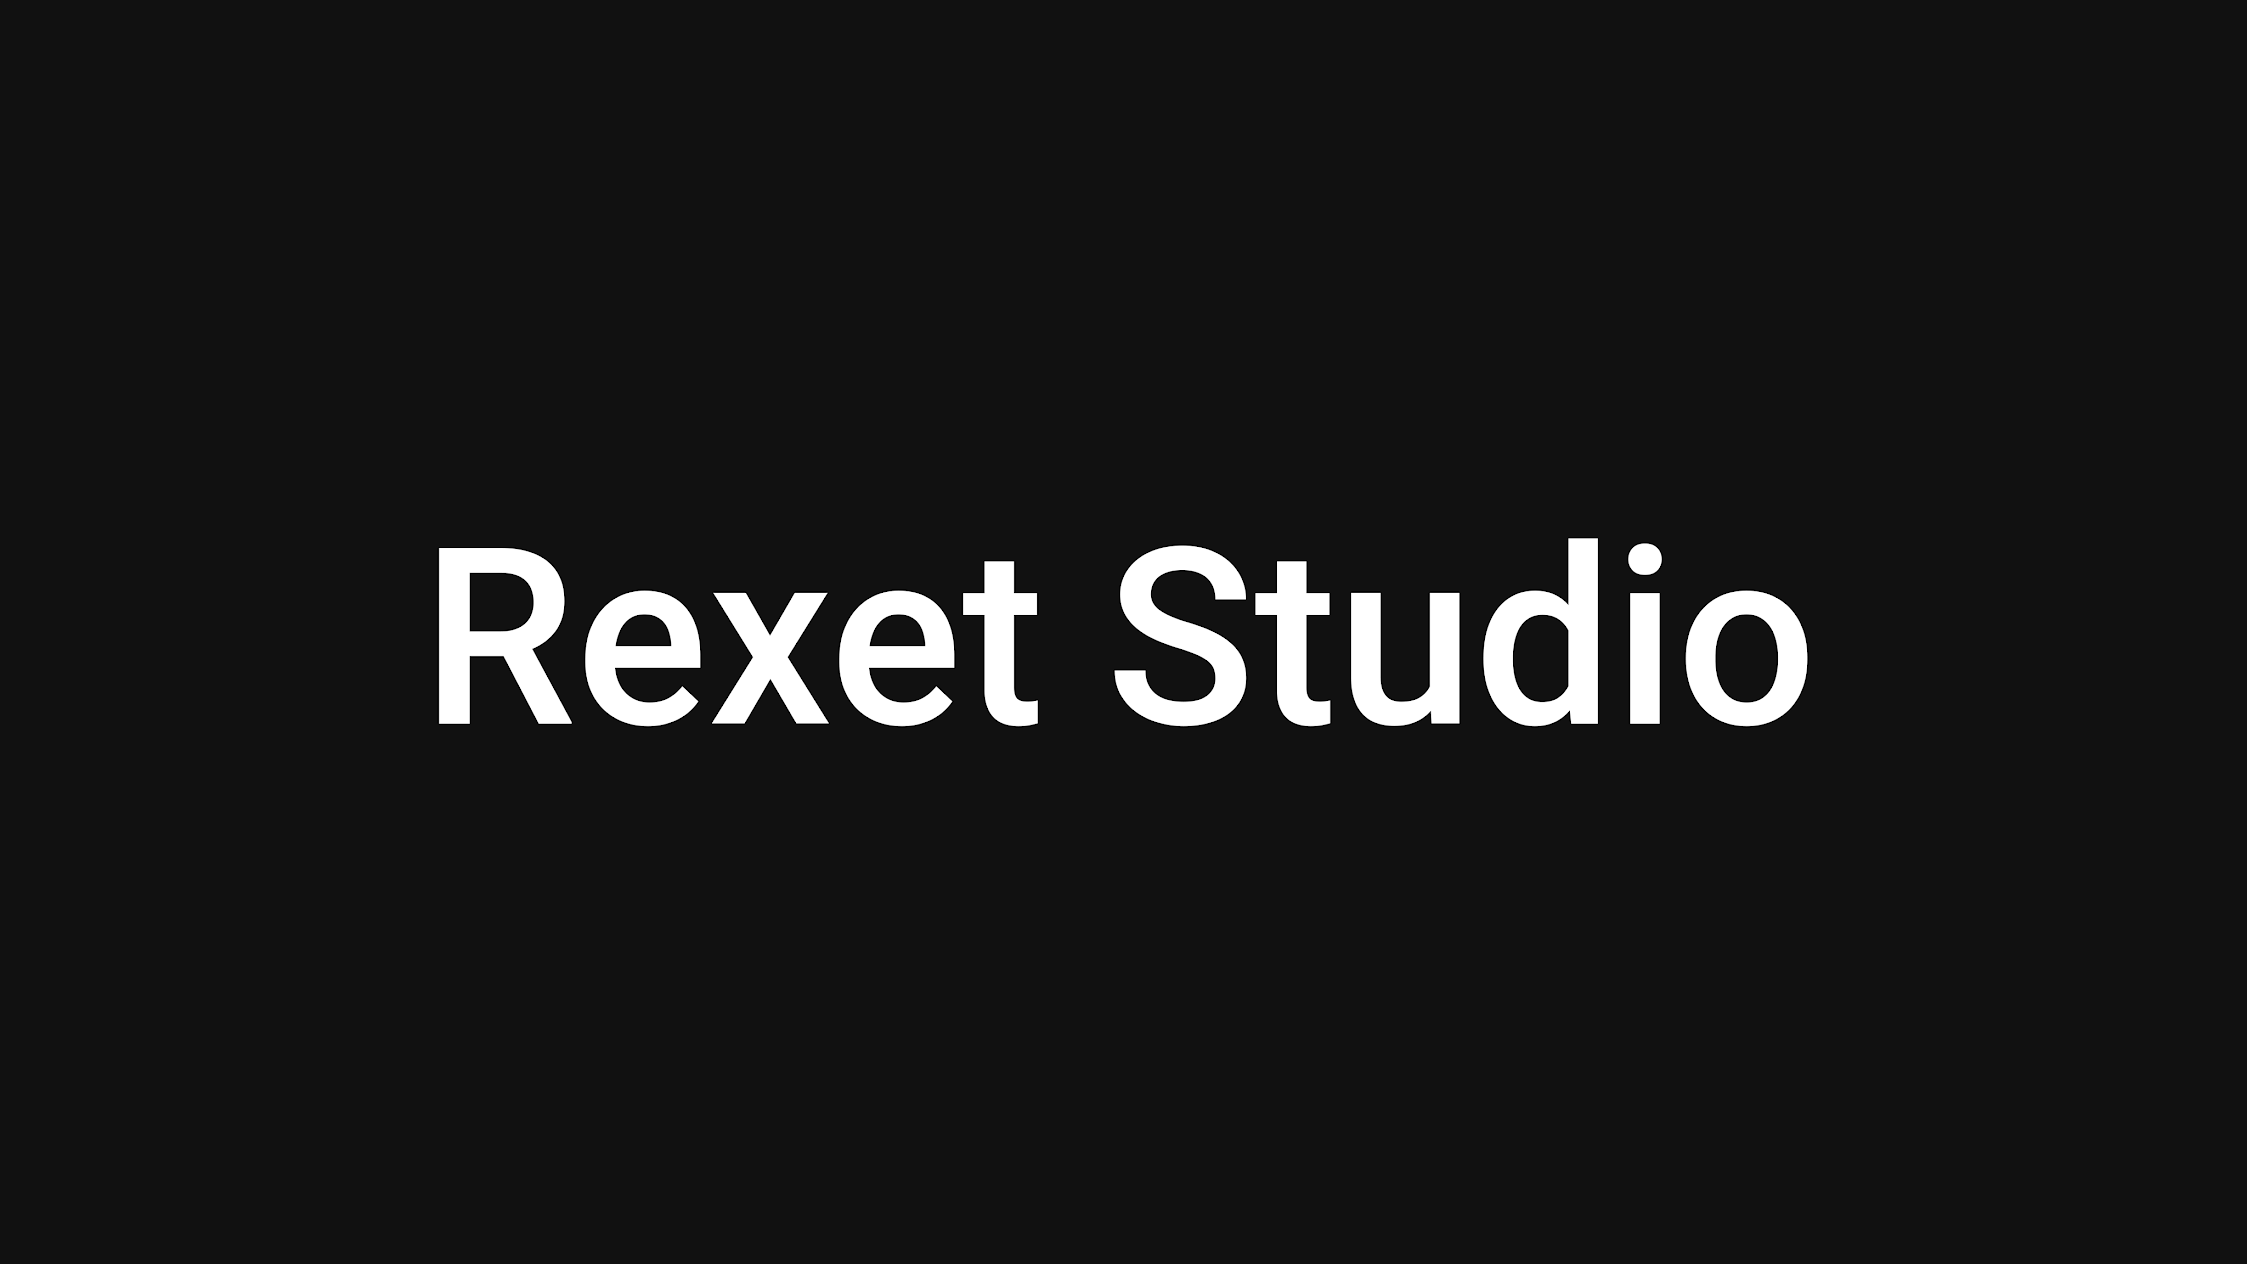 Rexet Studio